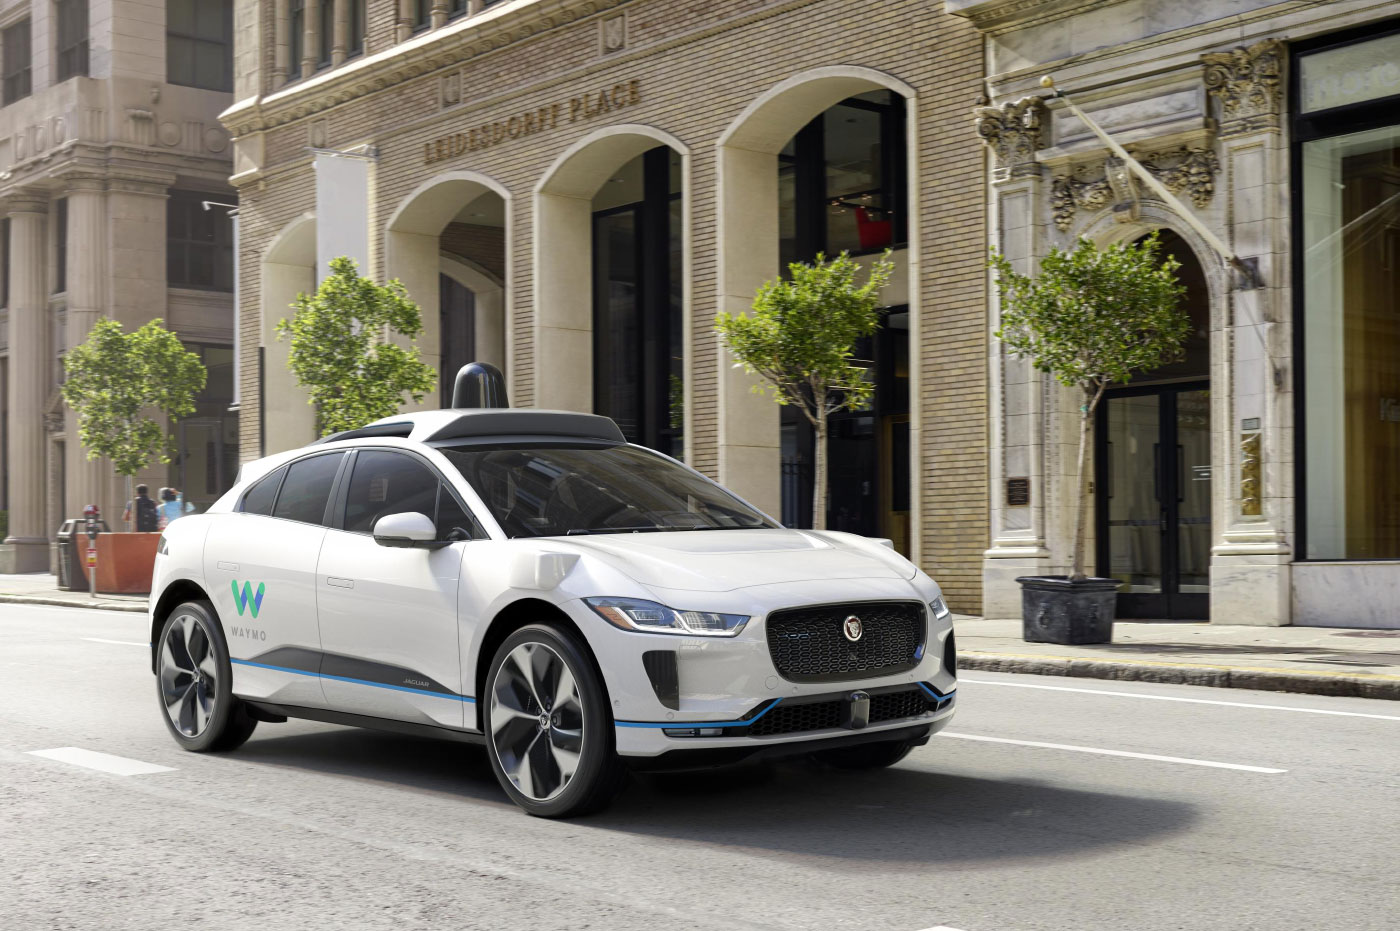 Rendering of the Jaguar I-Pace, Waymo's autonomous electric SUV.